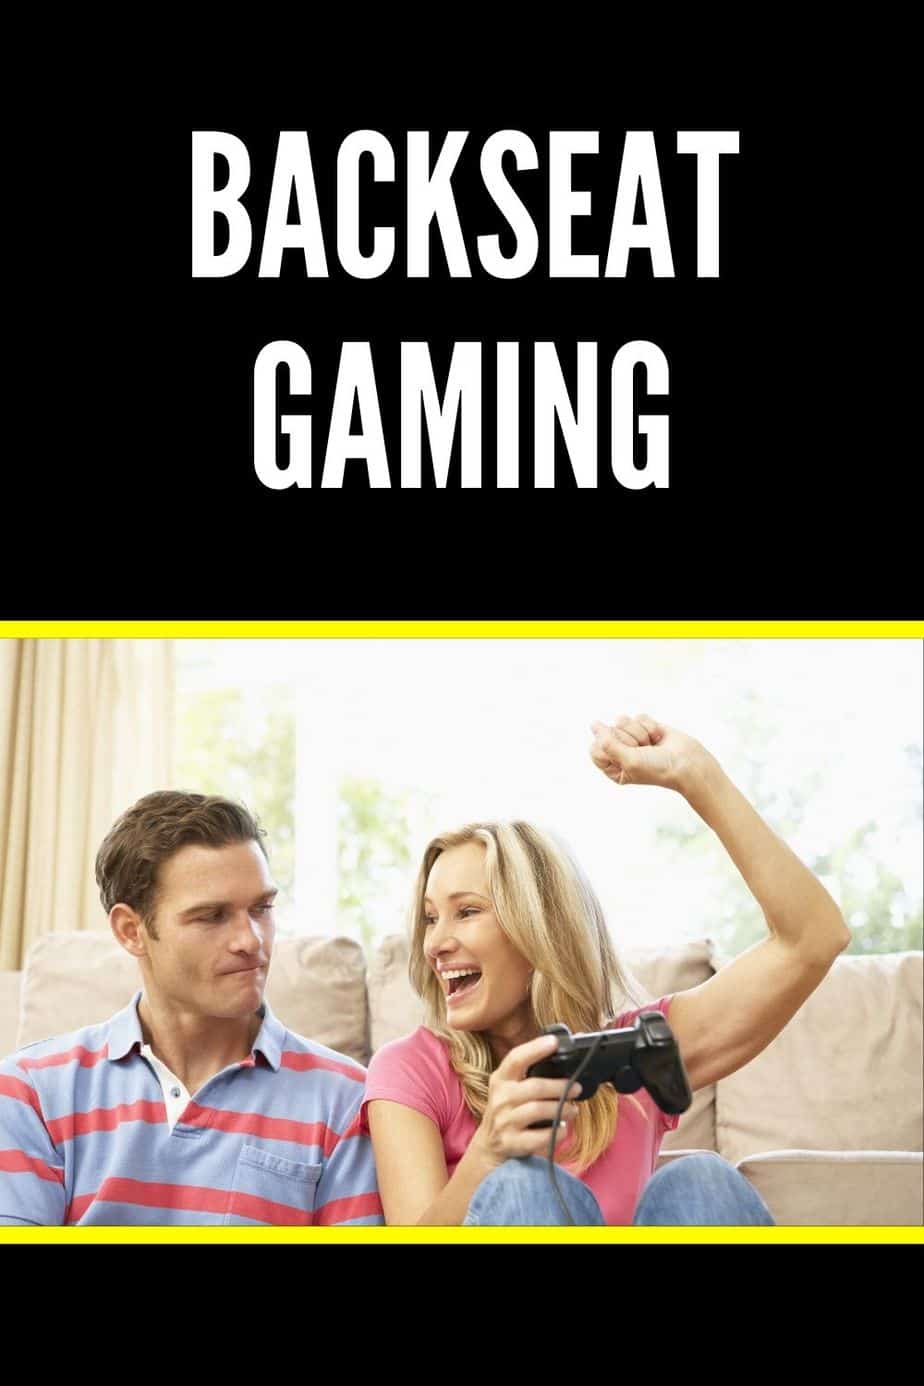 Backseat Gaming Definition